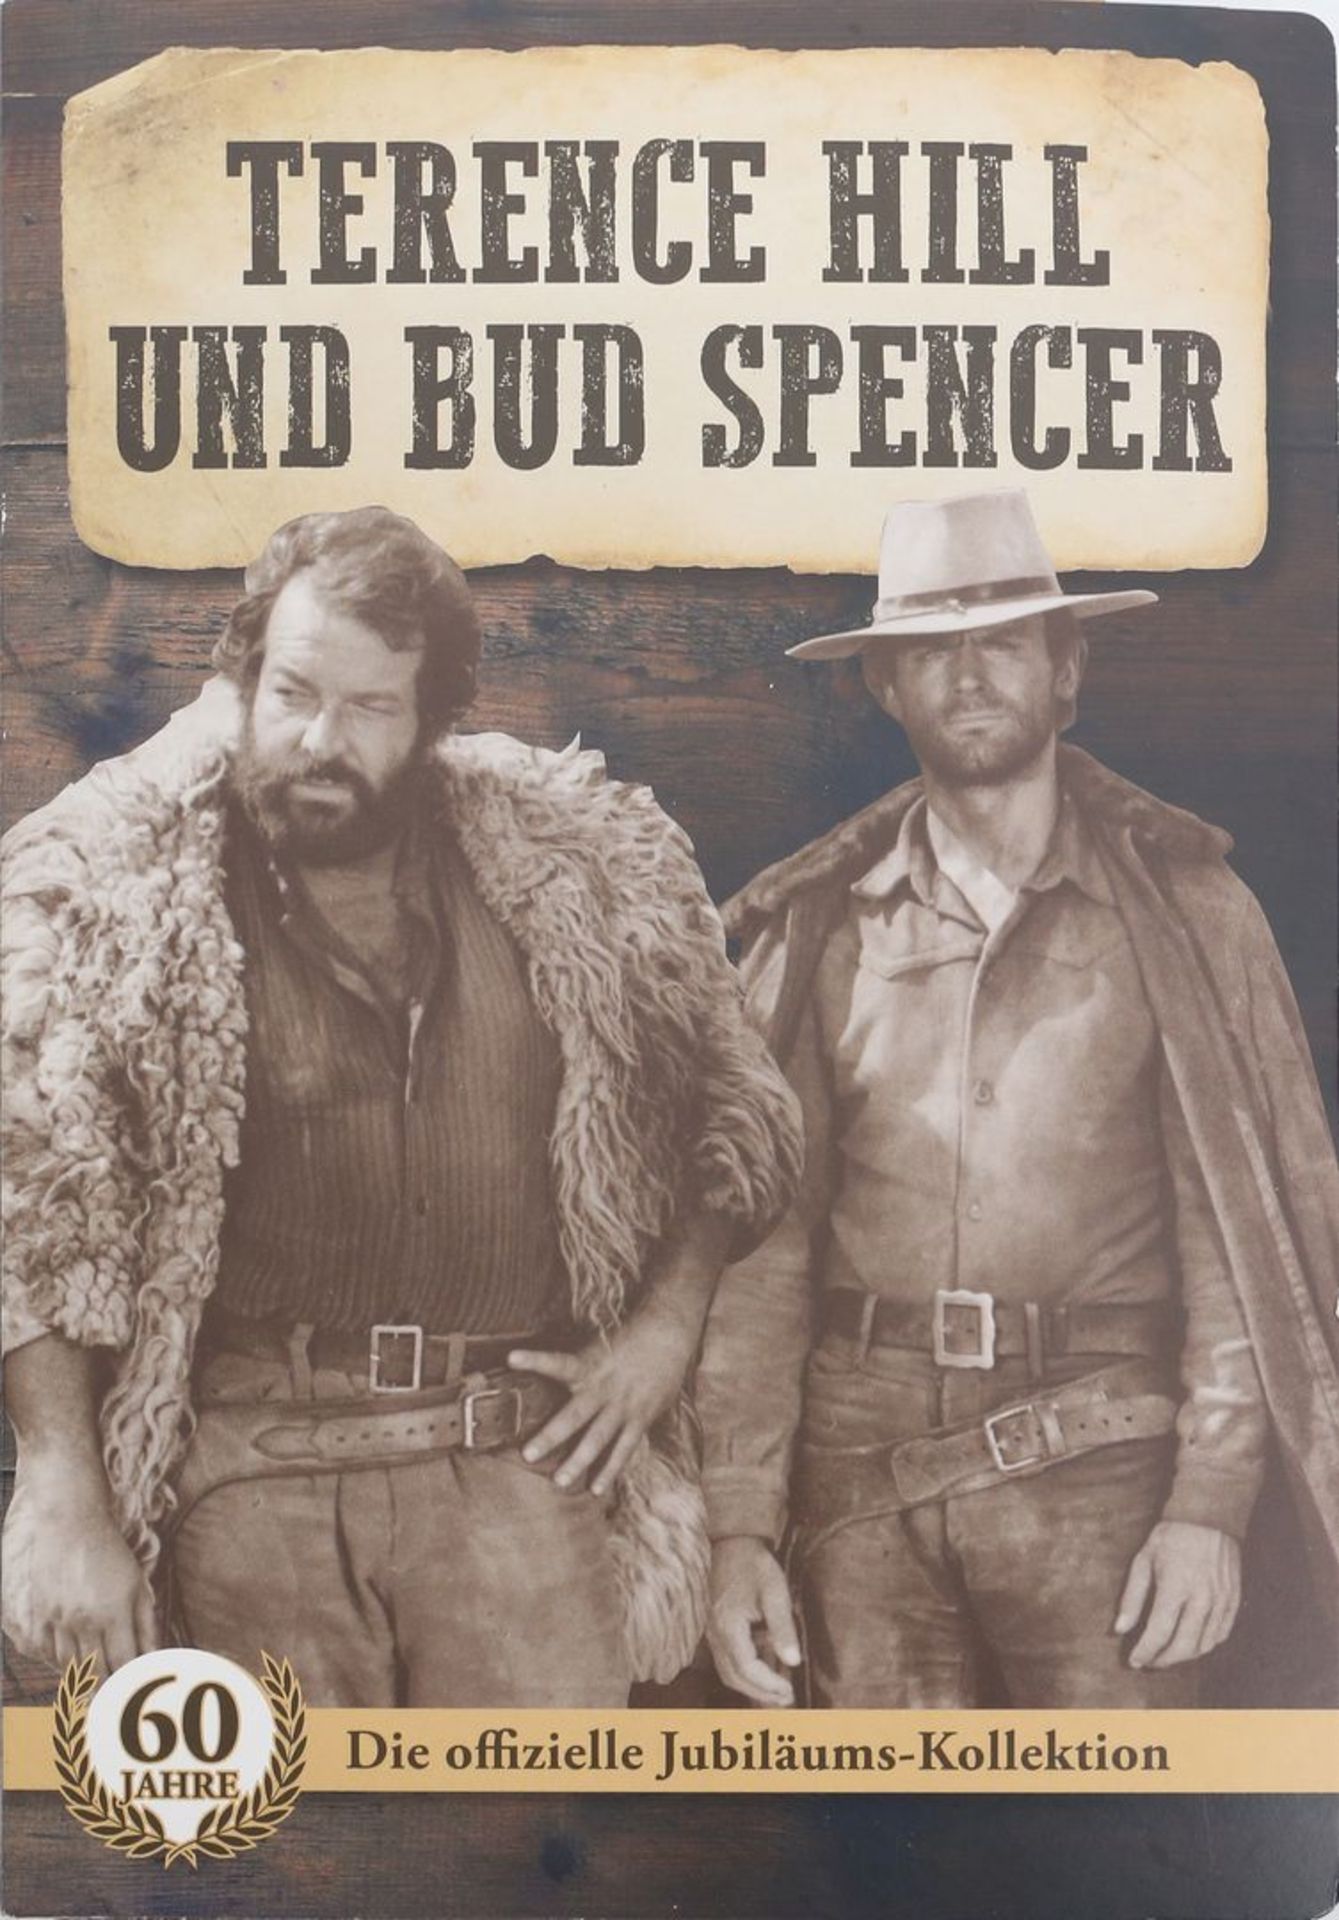 Sammlung Gedenkmedaillen "60 Jahre Terence Hill und Bud Spencer". - Bild 2 aus 2